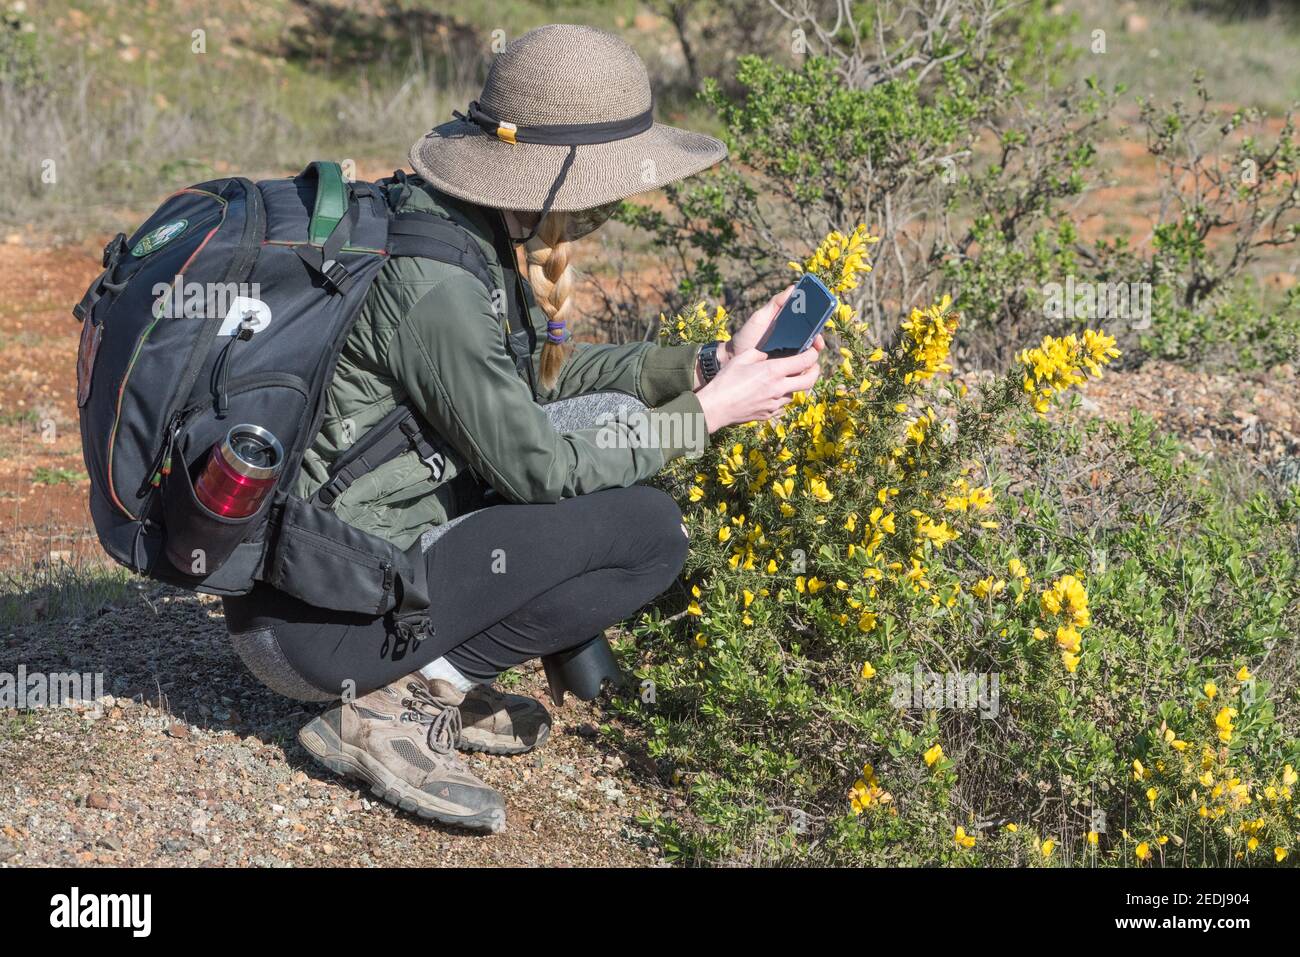 Una mujer hiker tomando una foto de gorse con su teléfono para iNaturalist, una herramienta de ciencia ciudadana en línea para registrar la biodiversidad. Foto de stock